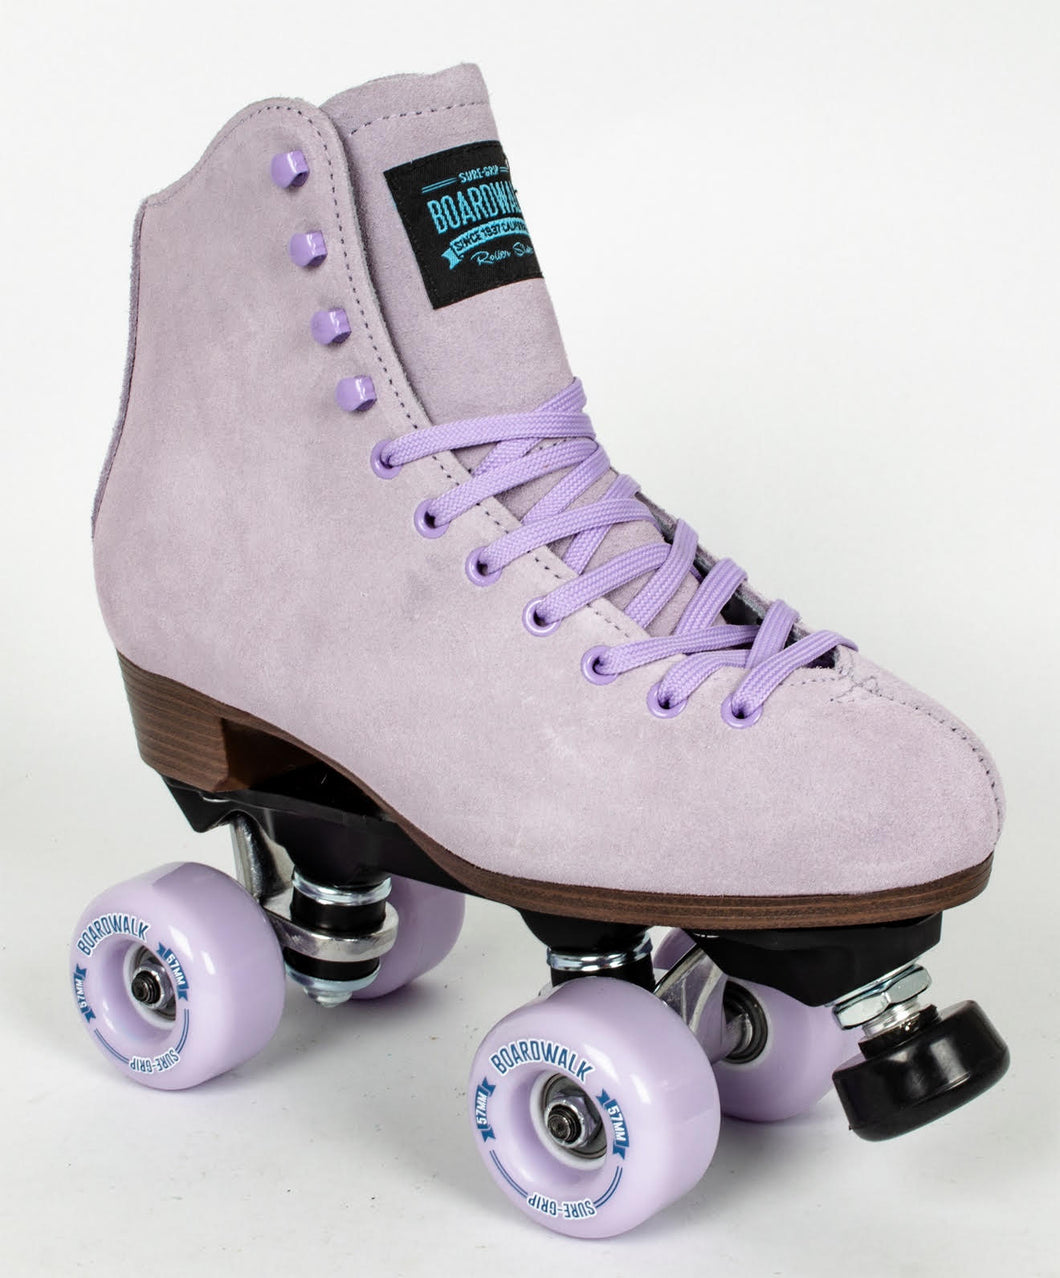 Roller Skates: Boardwalk by Sure-Grip - Lavender Size 5